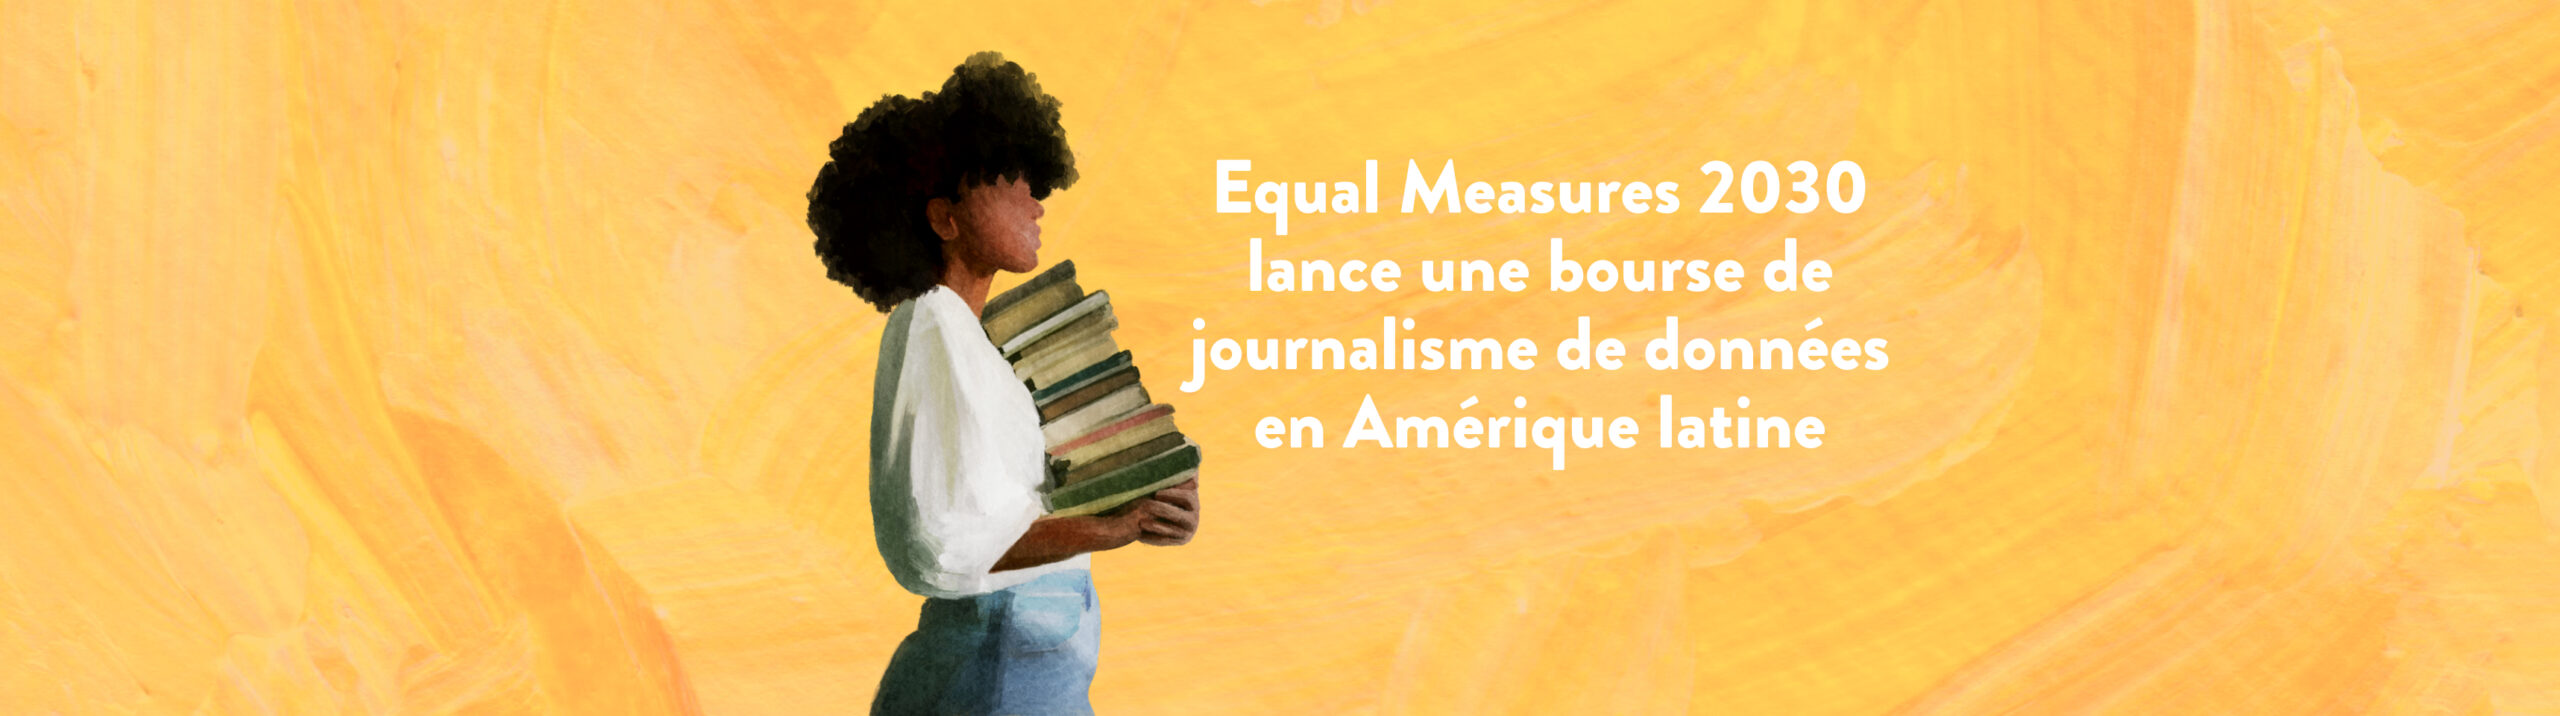 Equal Measures 2030 lance une bourse de journalisme de données en Amérique latine  